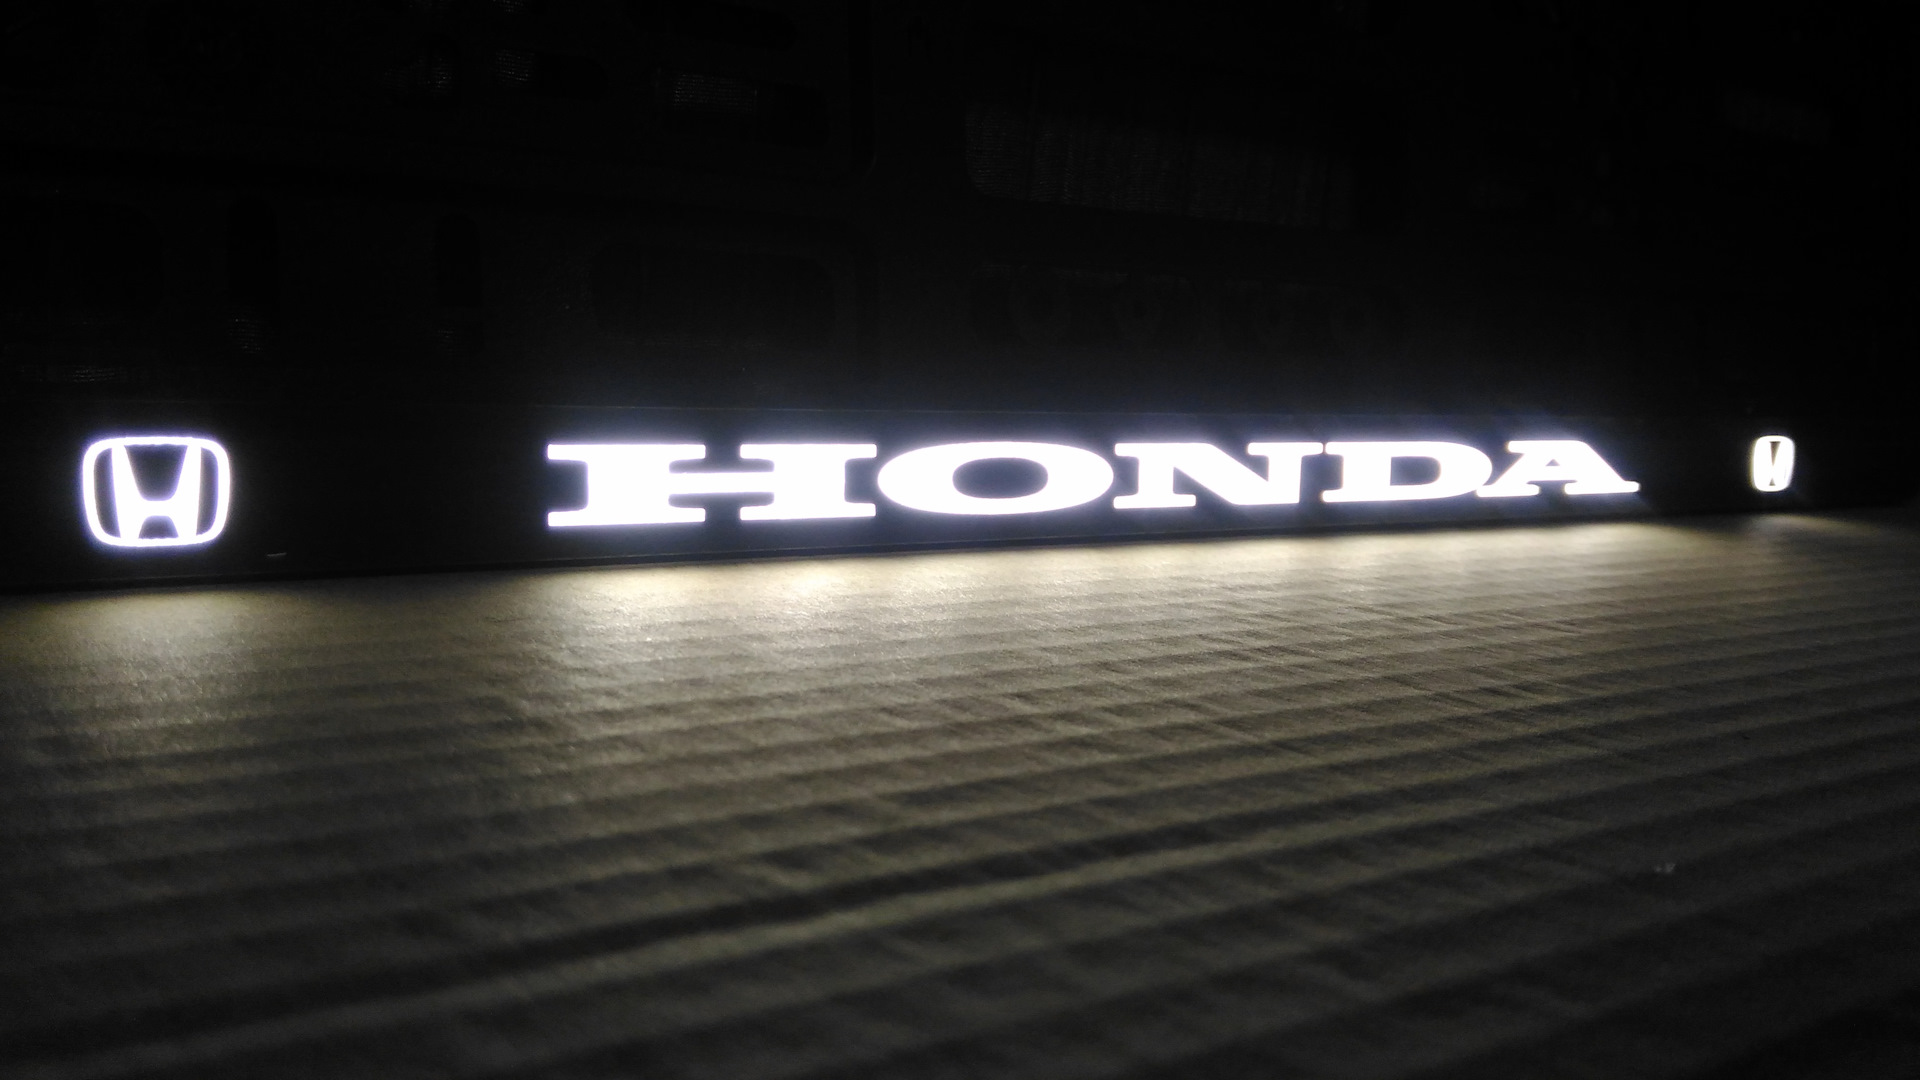 Рамка для автомобиля с подсветкой. Рамка номерного знака с надписью Хонда с подсветкой. Номерная рамка с подсветкой для автомобиля Хонда. Led рамка номера с подсветкой Opel. Номерная рамка 2114 с подсветкой.